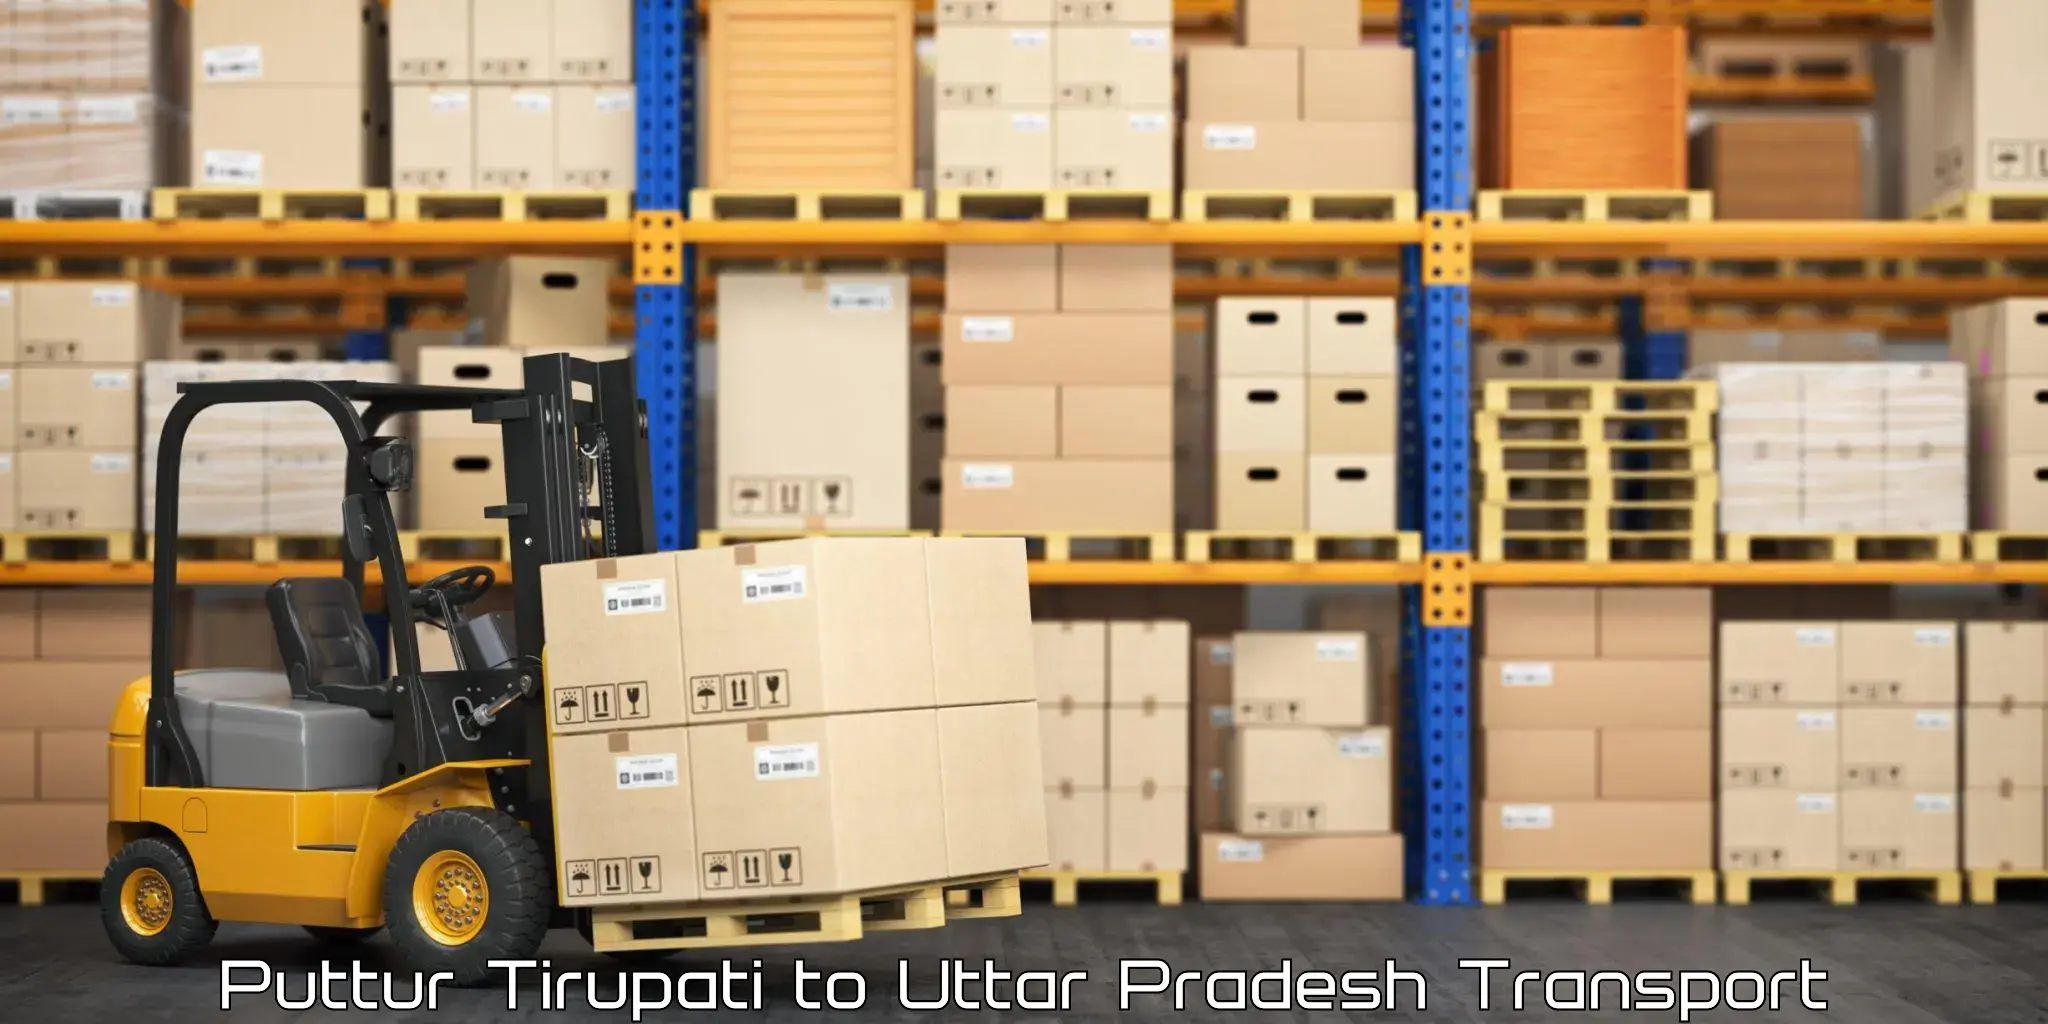 Container transport service Puttur Tirupati to Badlapur